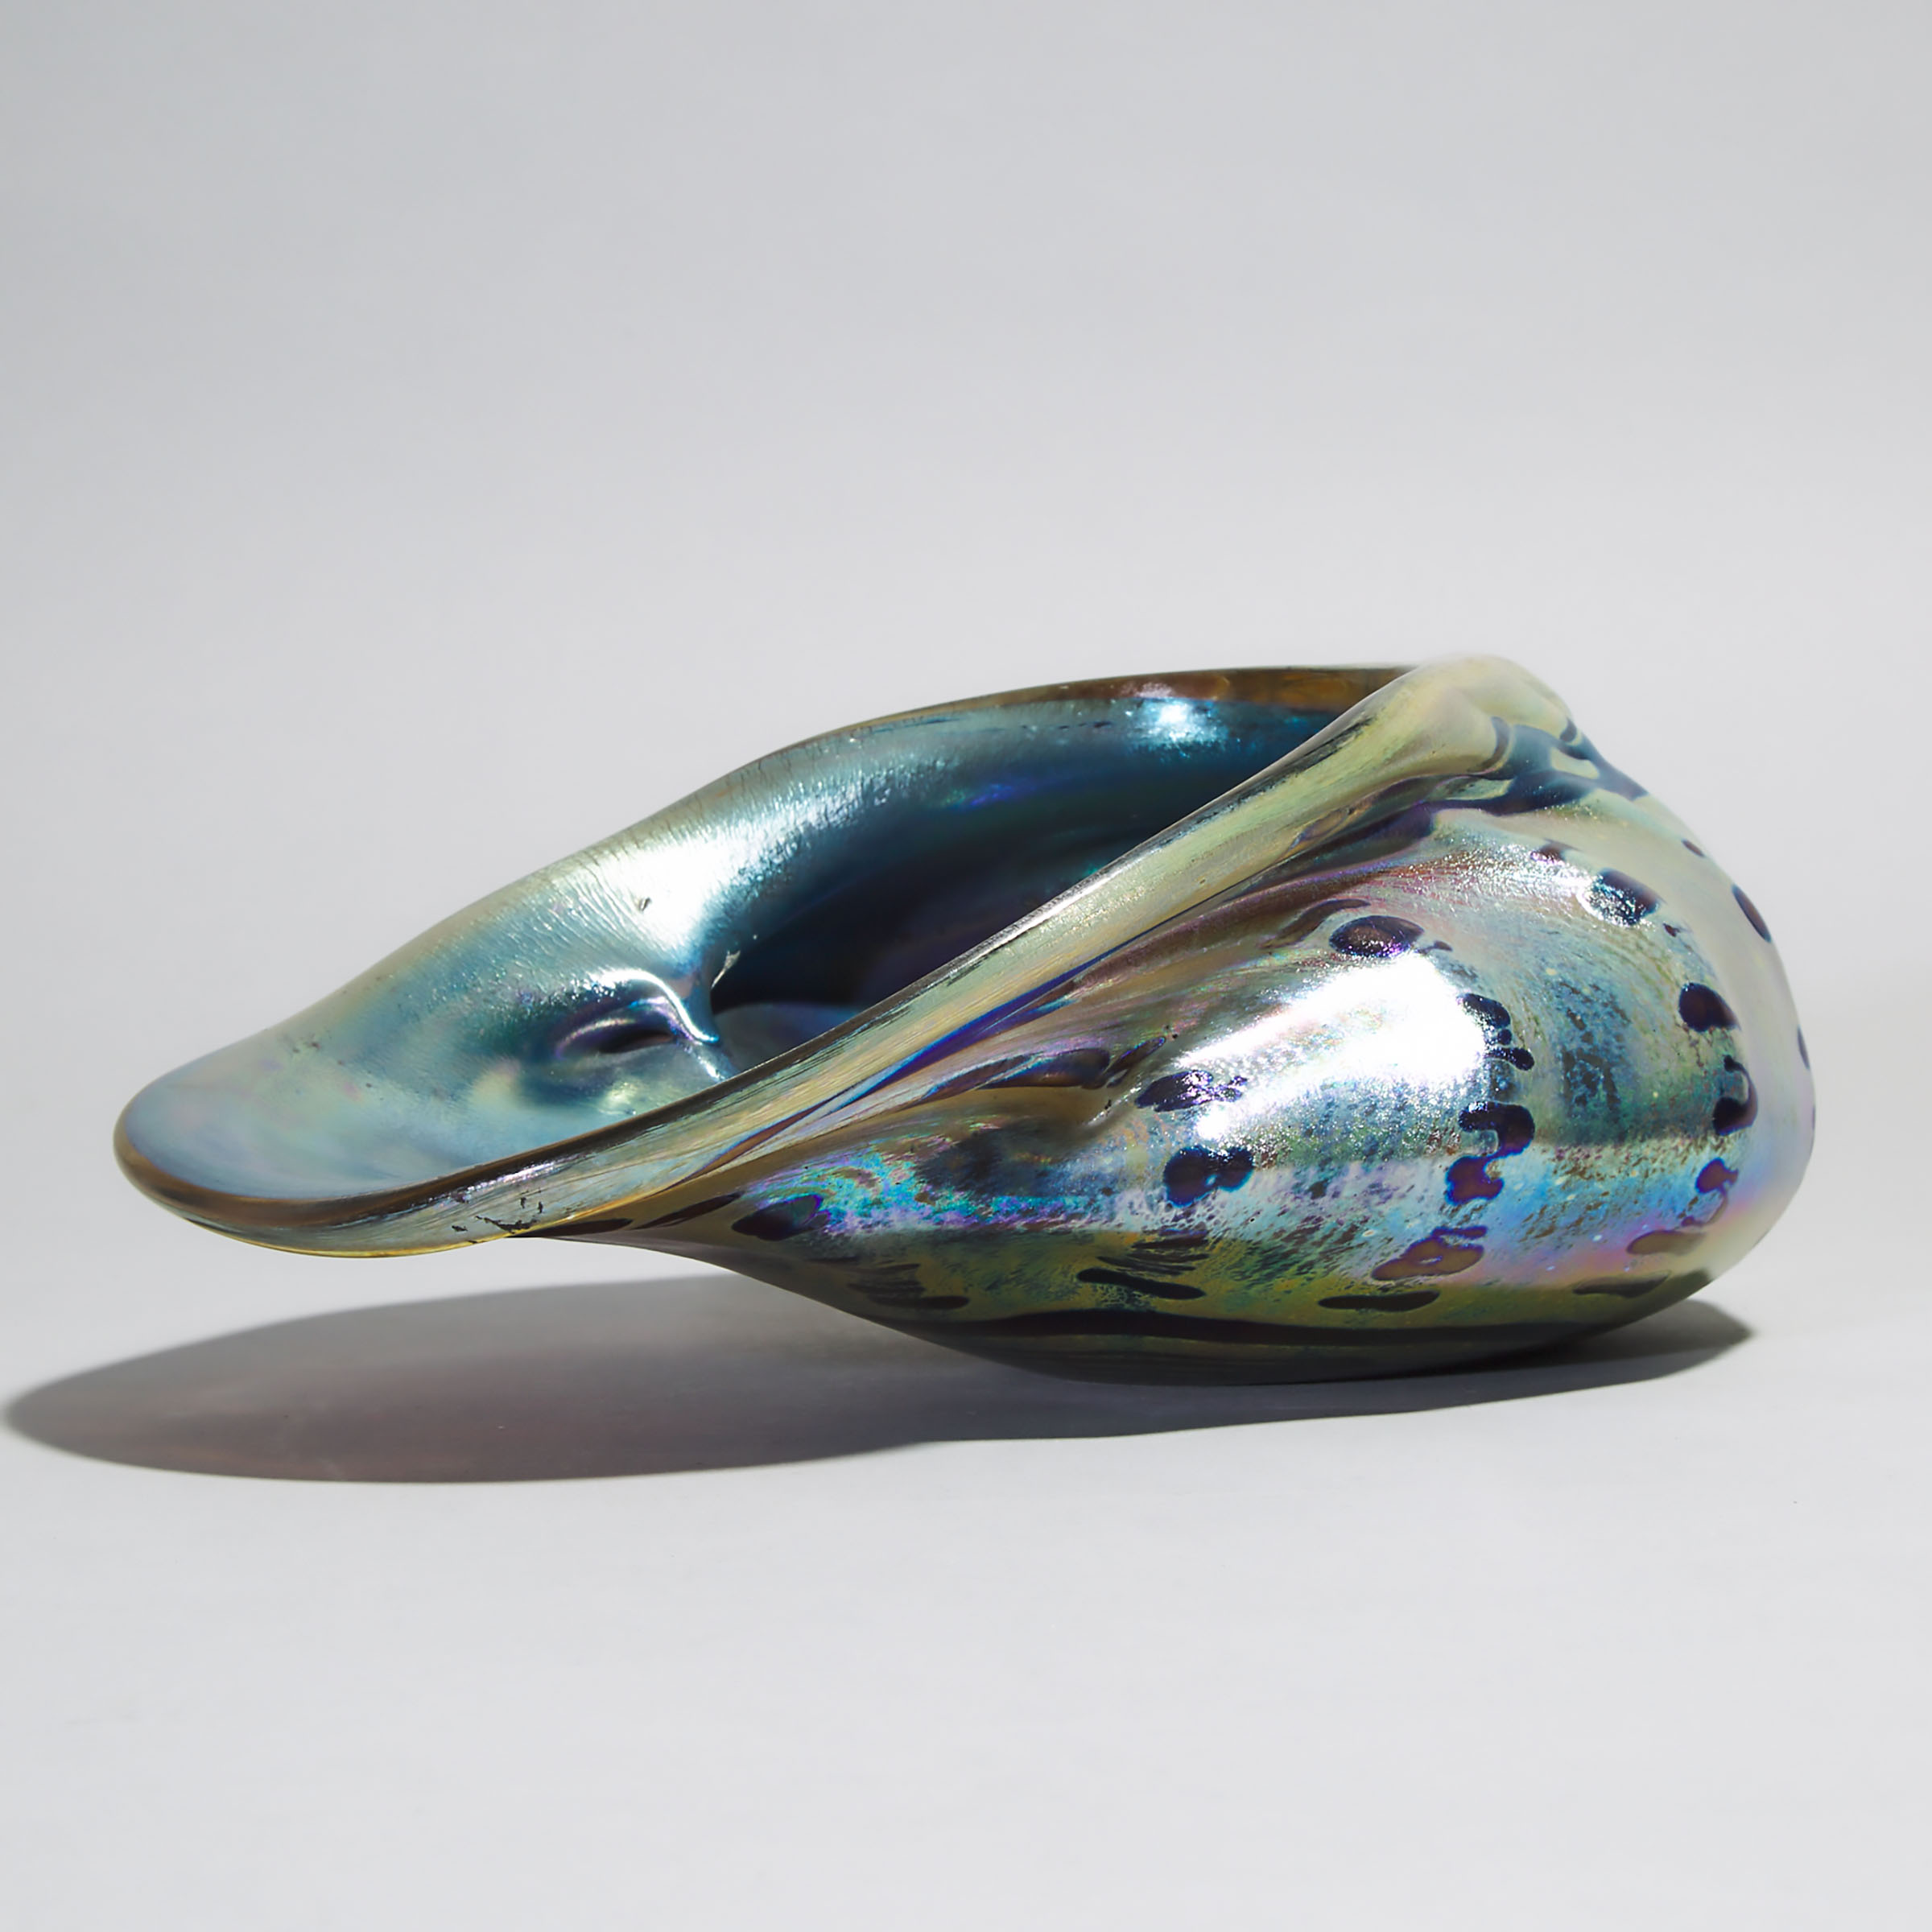 Peter Layton (British, b.1937), Iridescent Glass Shell, 1984